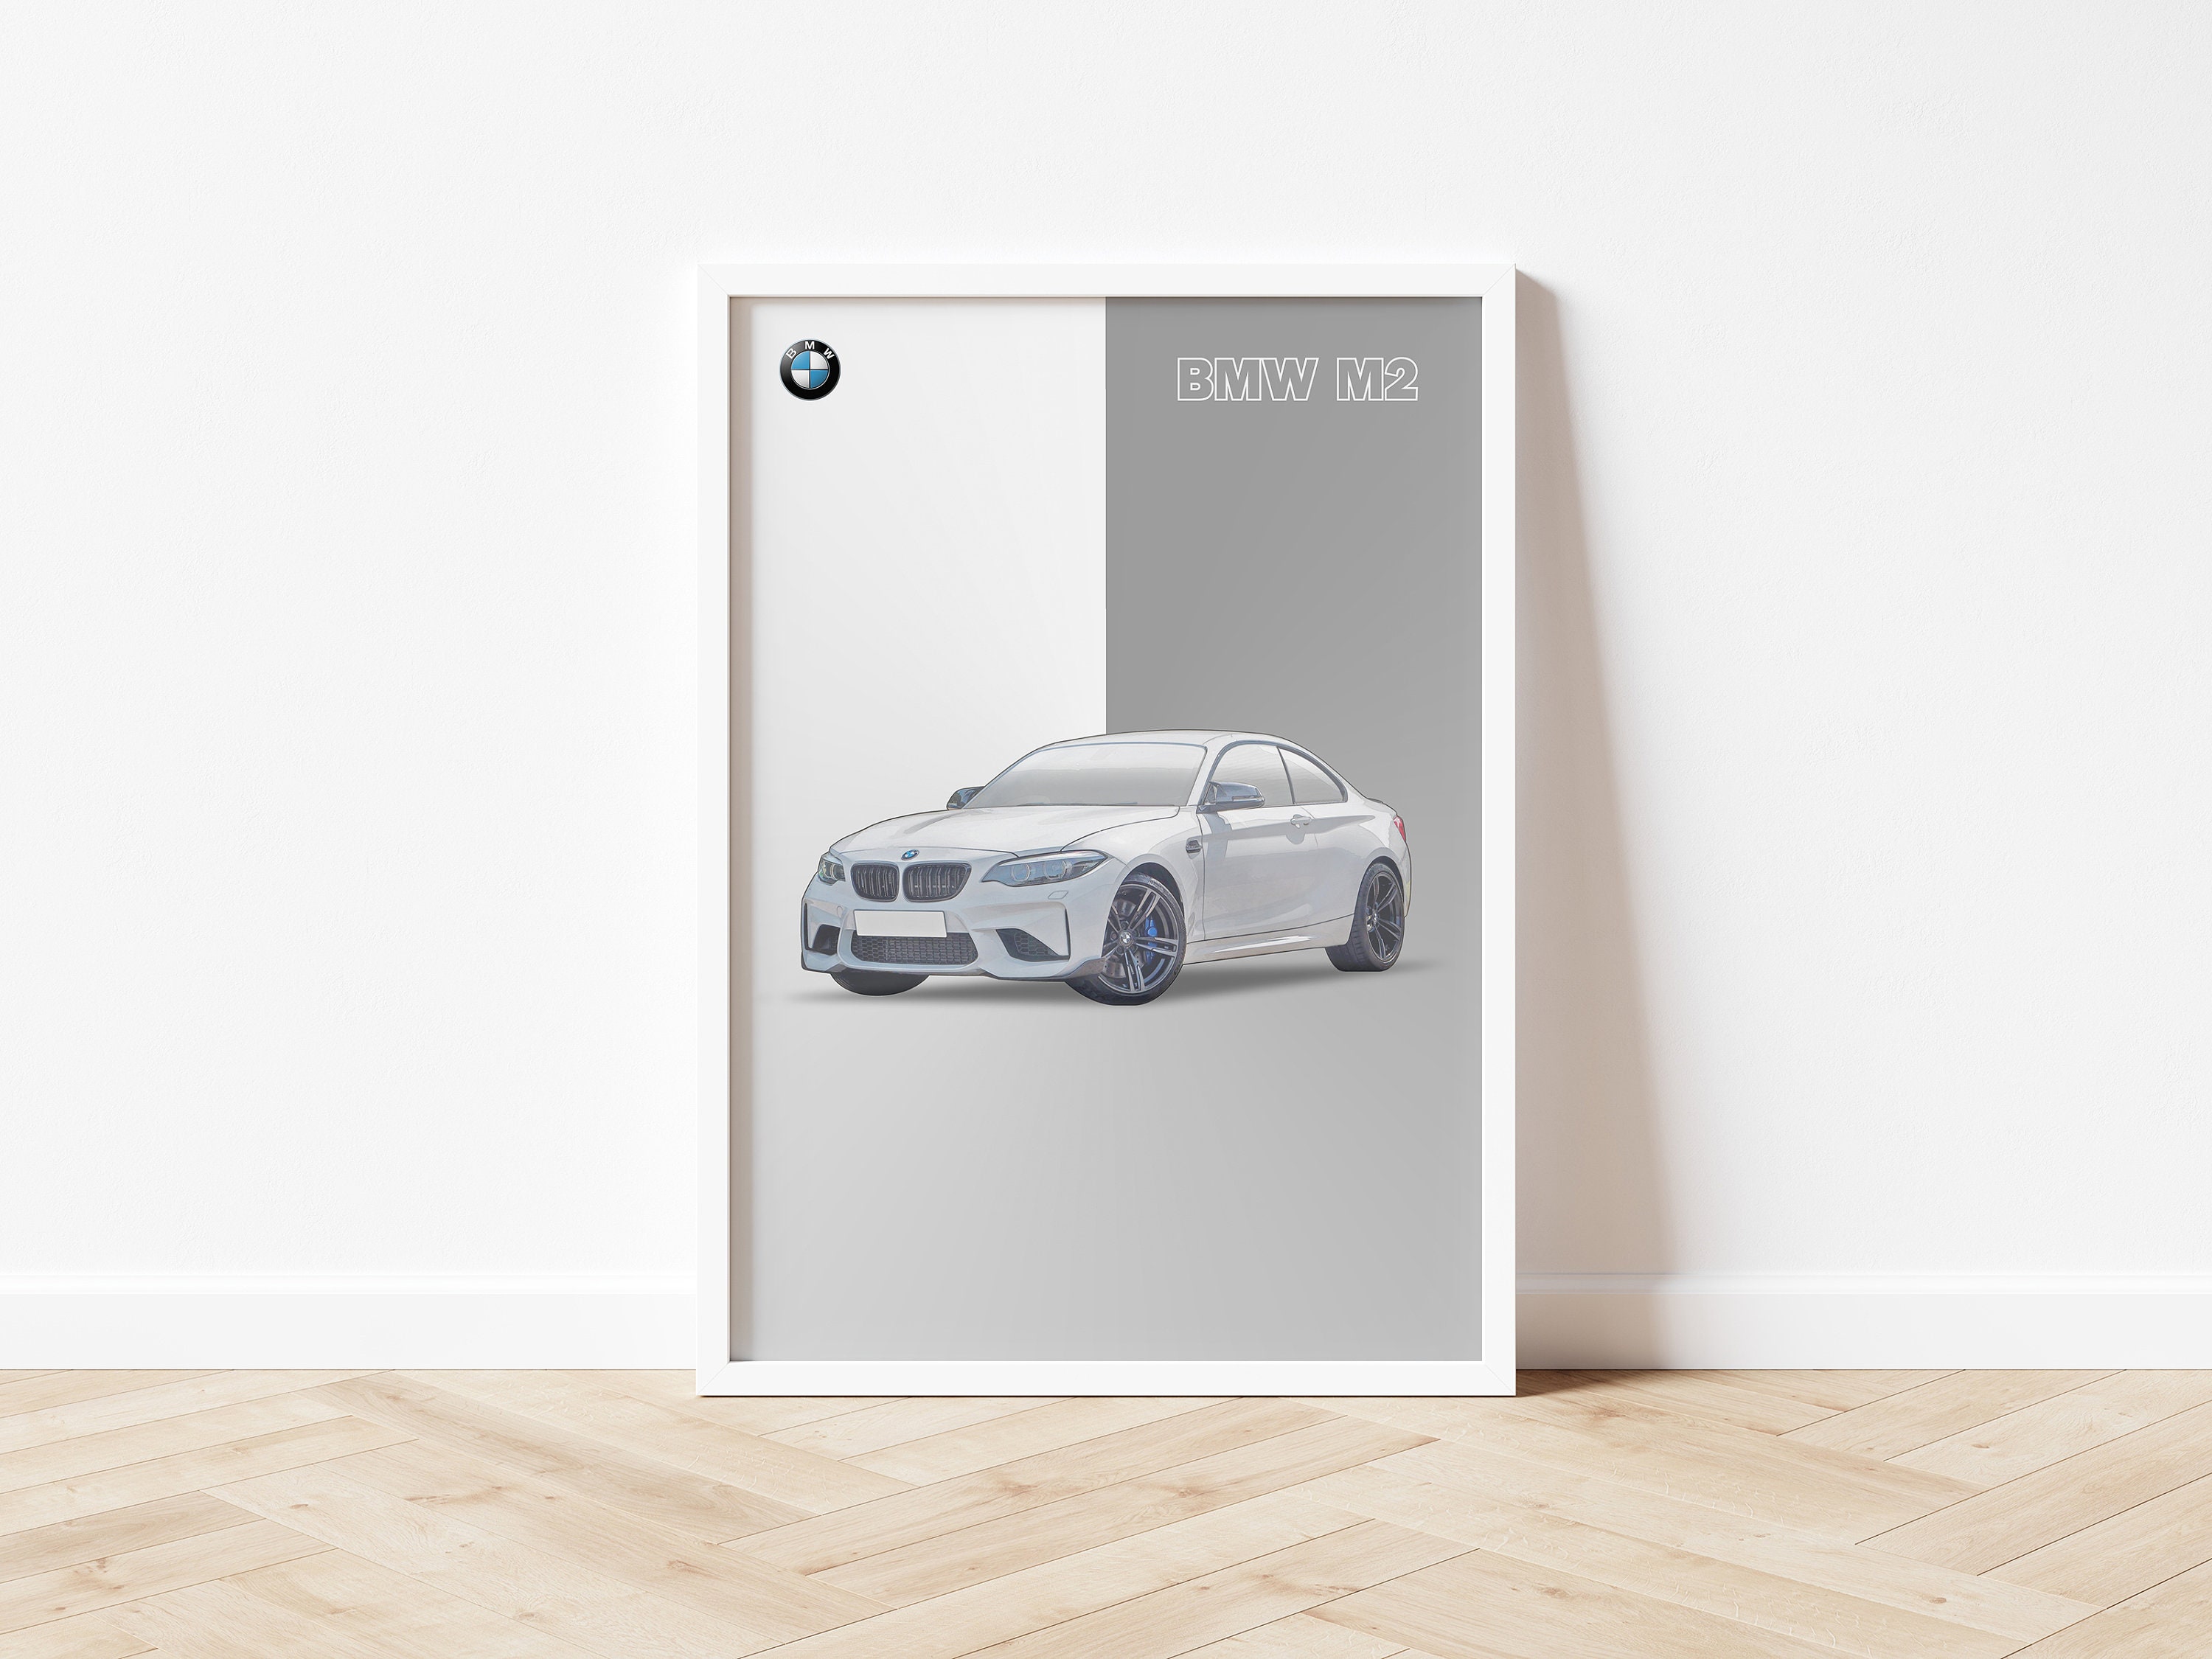 50 Jahre Auto Zeitung: BMW-Poster im Heft, X2 zu gewinnen